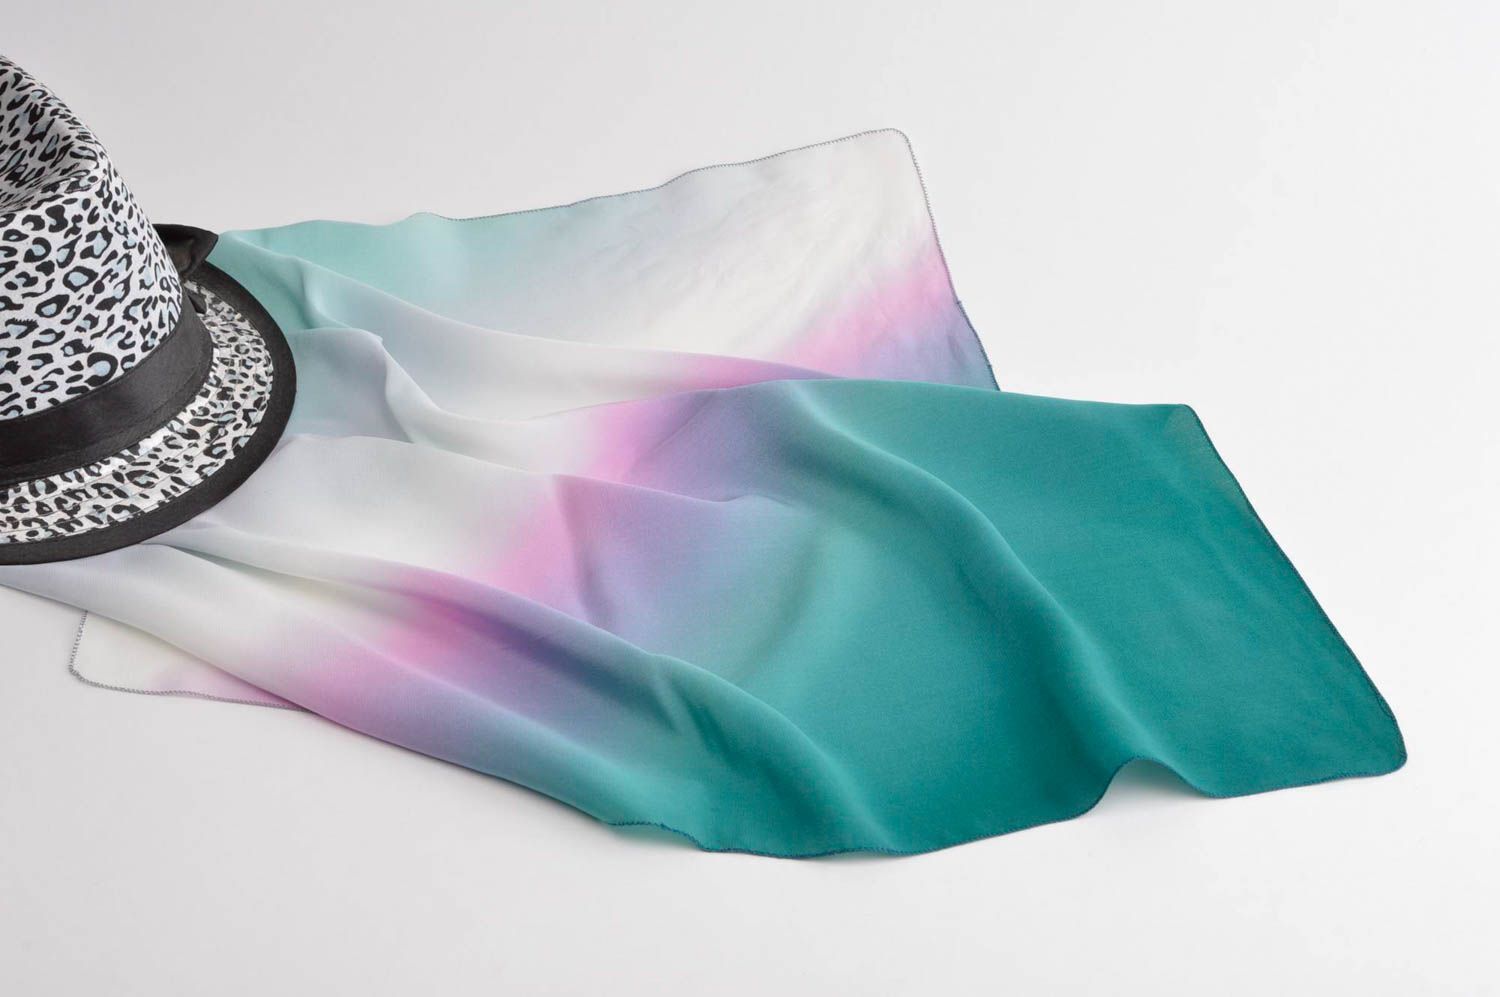 Симпатичный платок ручной работы платок из шелка светлый женский аксессуар фото 1